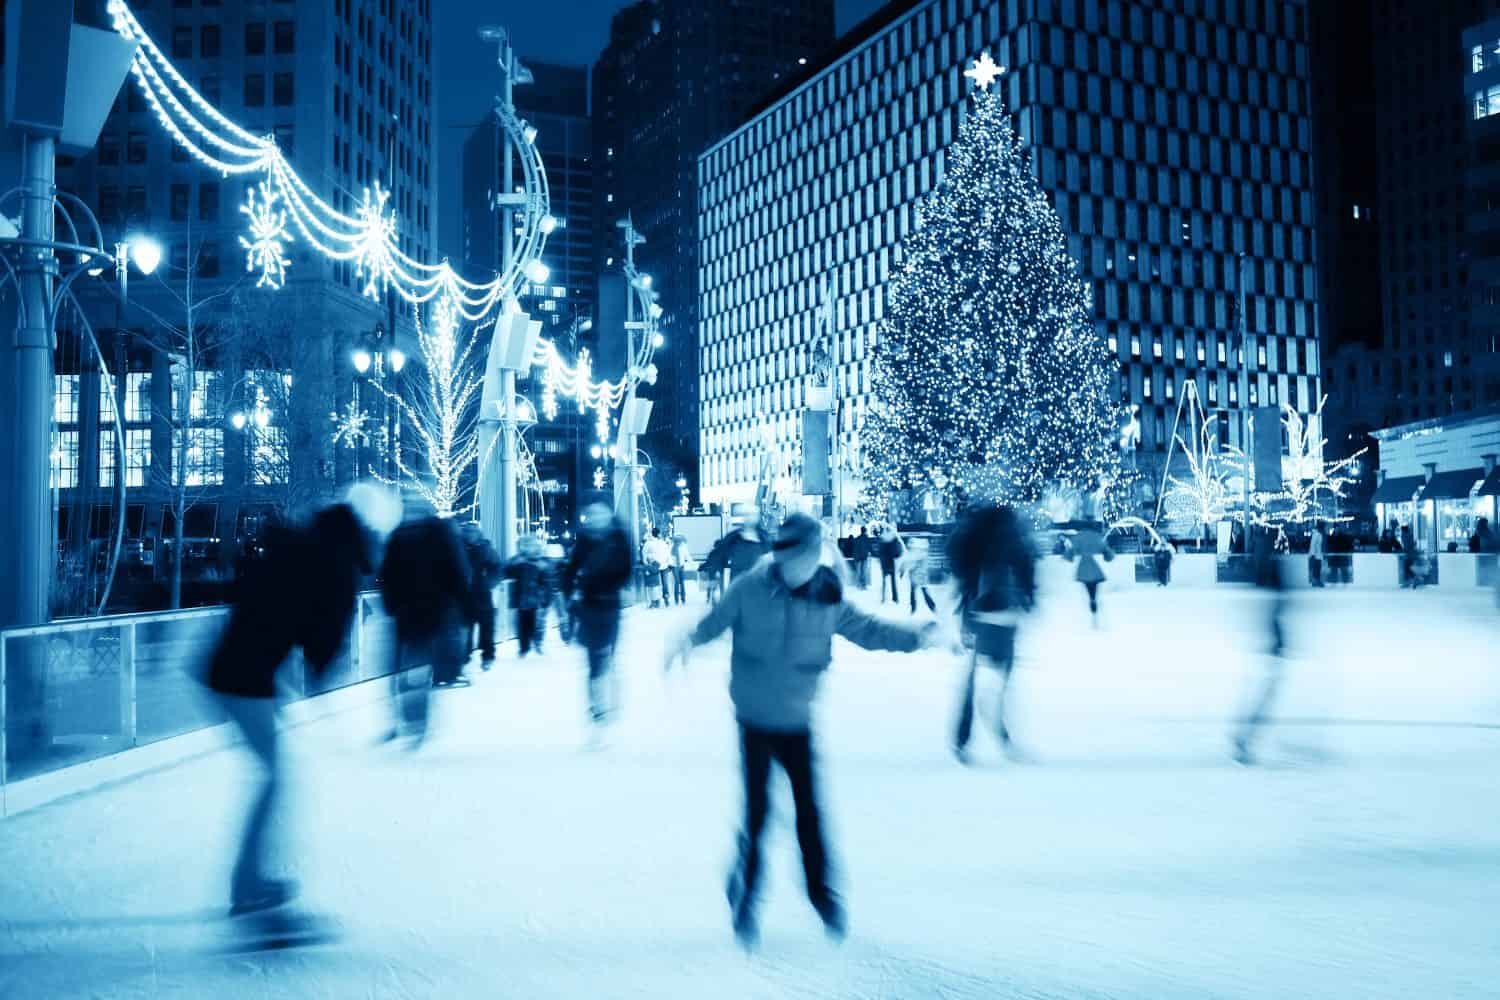 Ice Skating at Christmas (motion blur)